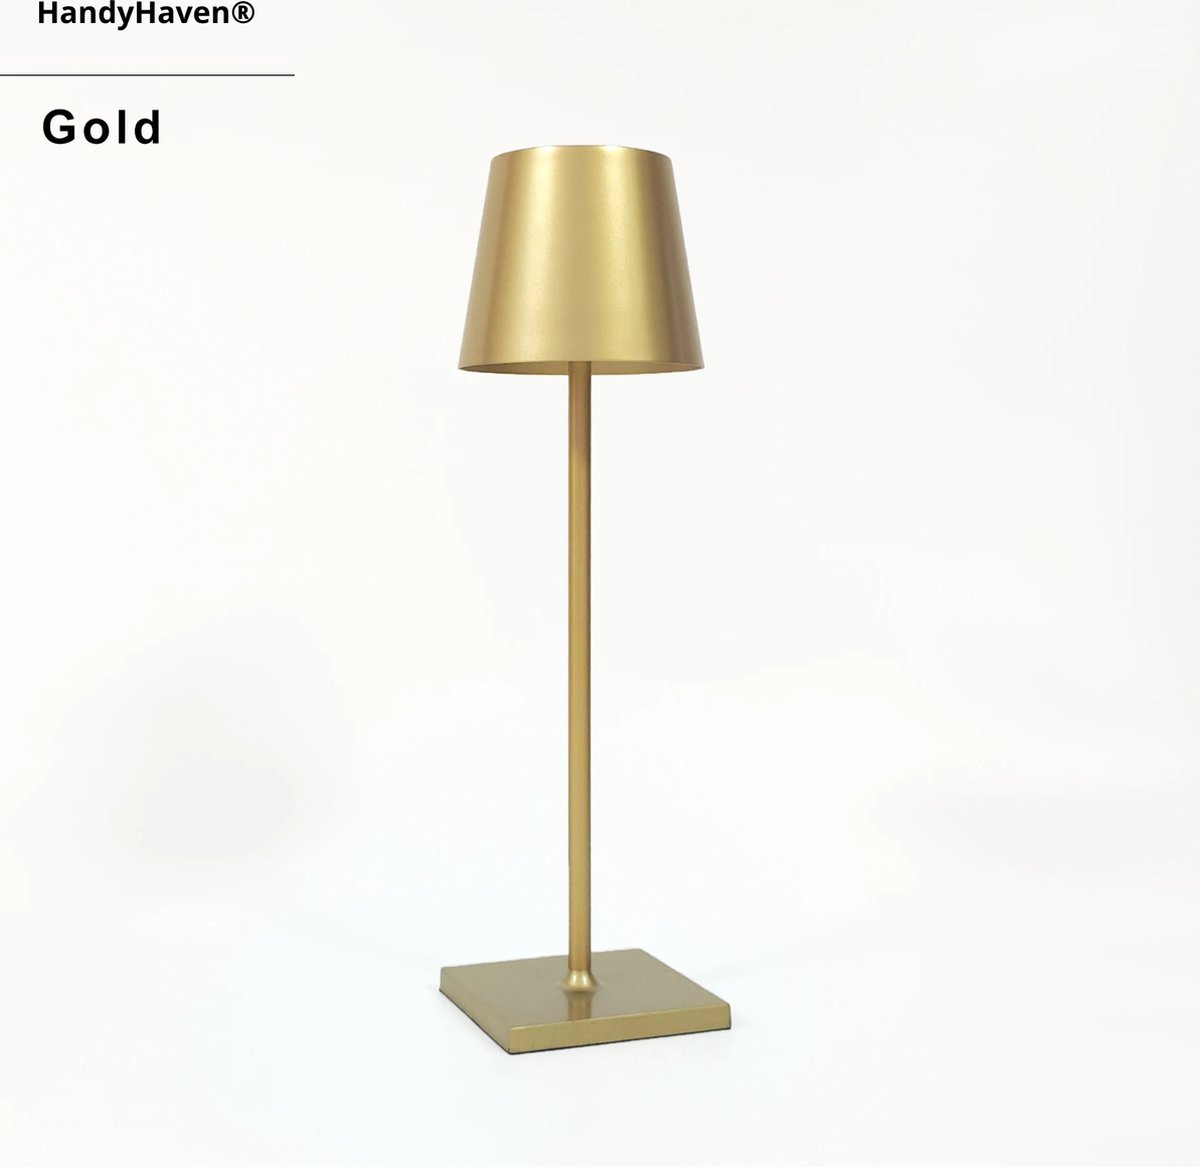 HandyHaven® - Tafellamp - Lamp - Buitenlamp - Nachtlamp - Bureaulamp - Goud - Gold - LED verlichting - Waterbestendig - USB opladen - Lampgrootte 38x11cm - Werktijd 15-20u